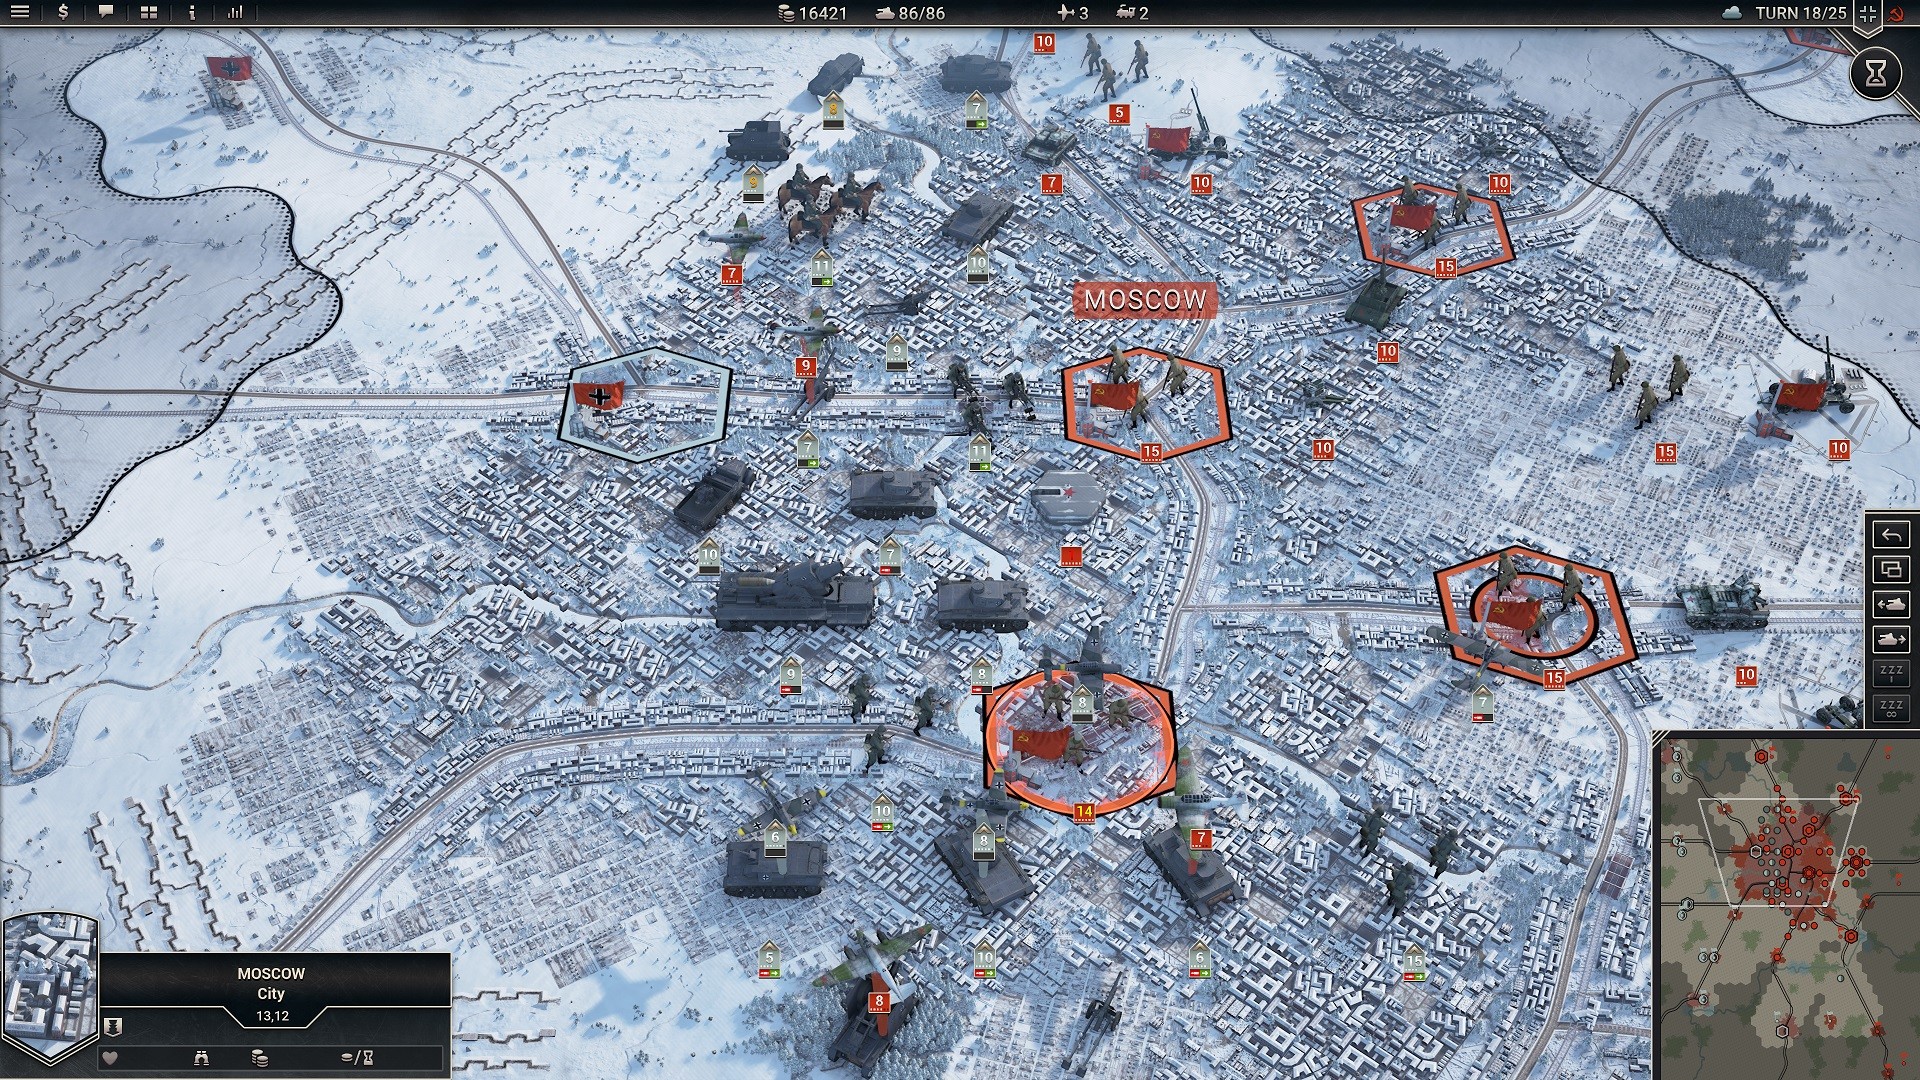 بہترین جنگ کے کھیل: پینزر کور 2. امیج اس پر مختلف ٹینکوں کے ساتھ نقشہ دکھاتا ہے۔